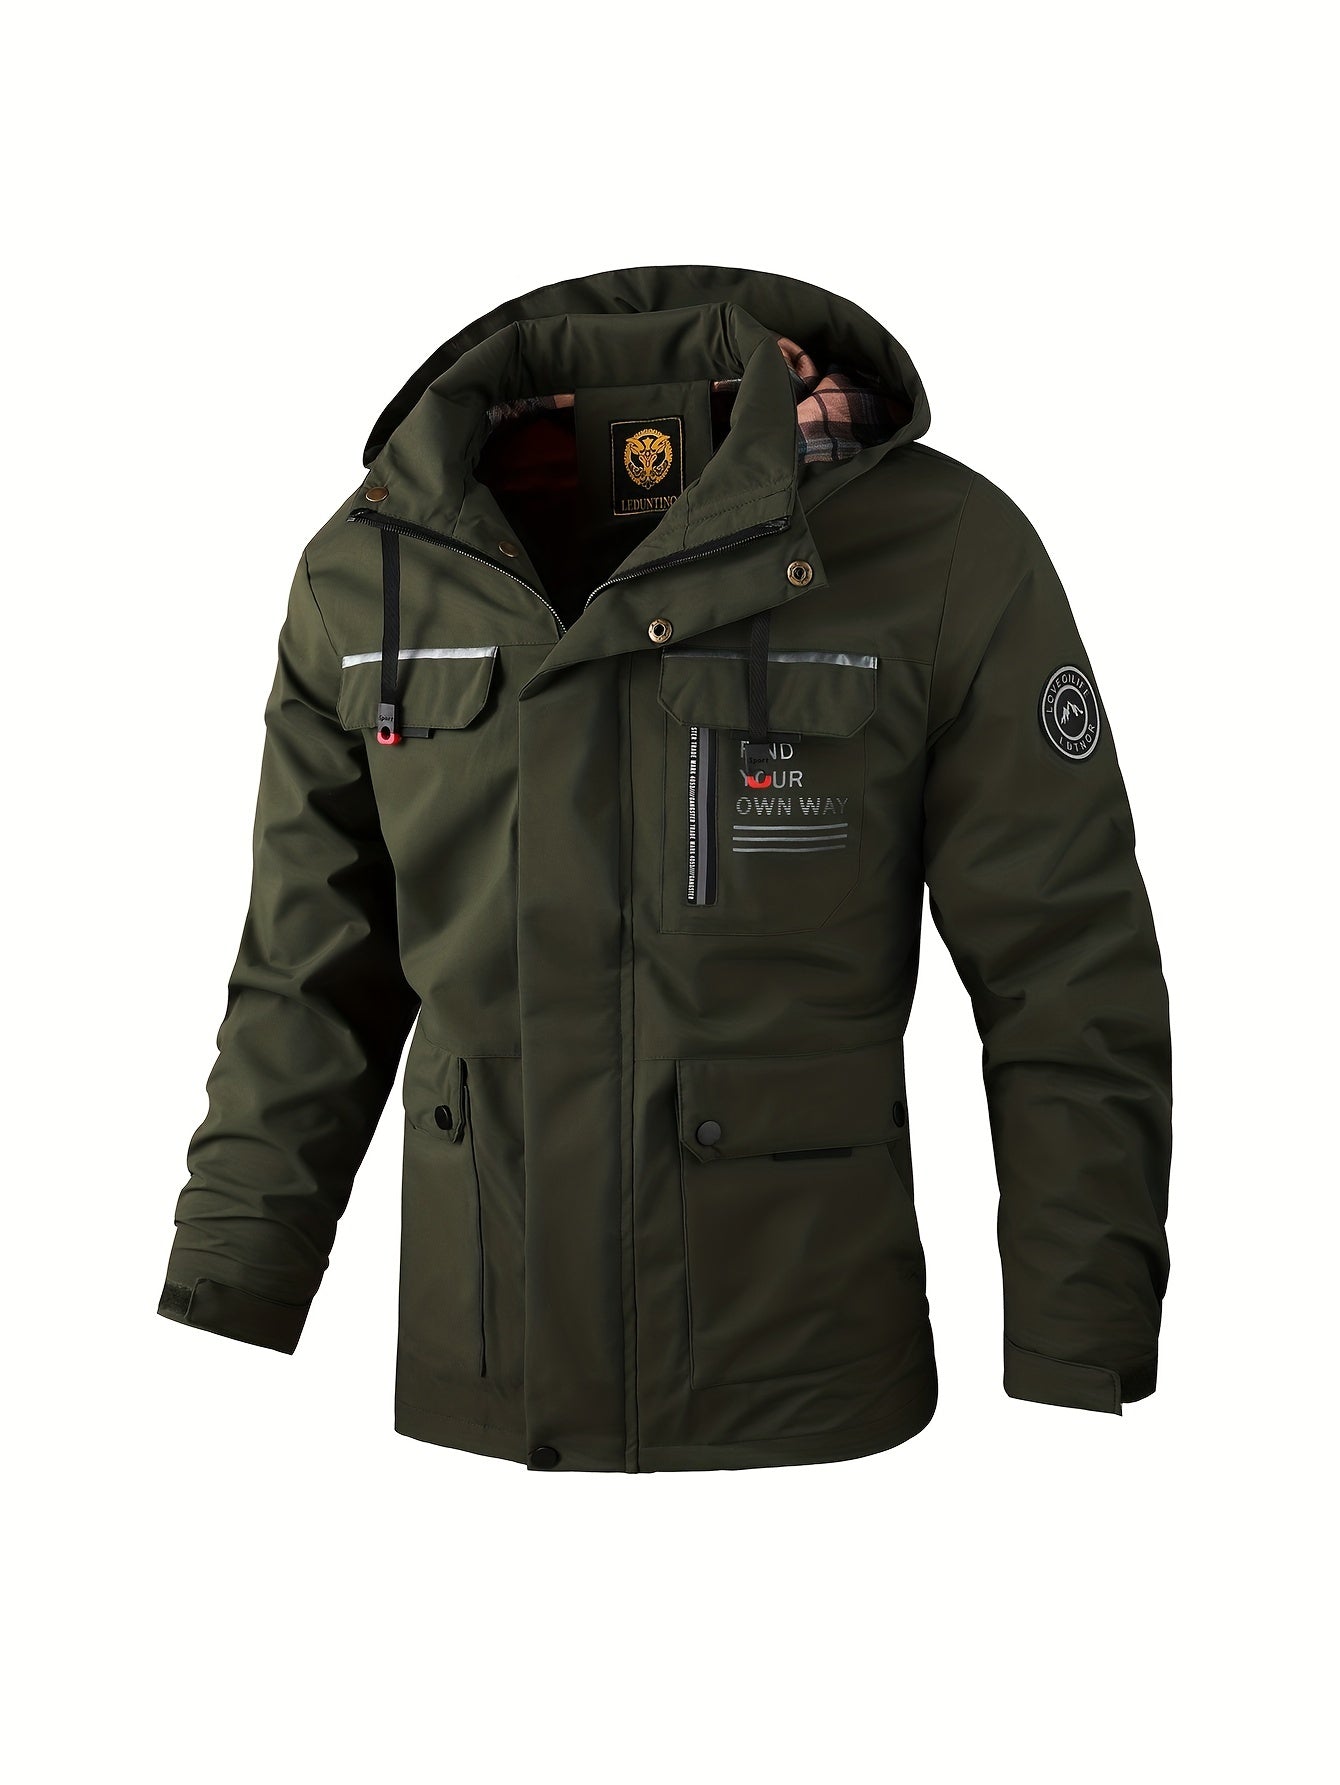 Men's Fashion Casual Windbreaker Bomber Jacket, Spring Outdoor Waterproof Sports Jacket